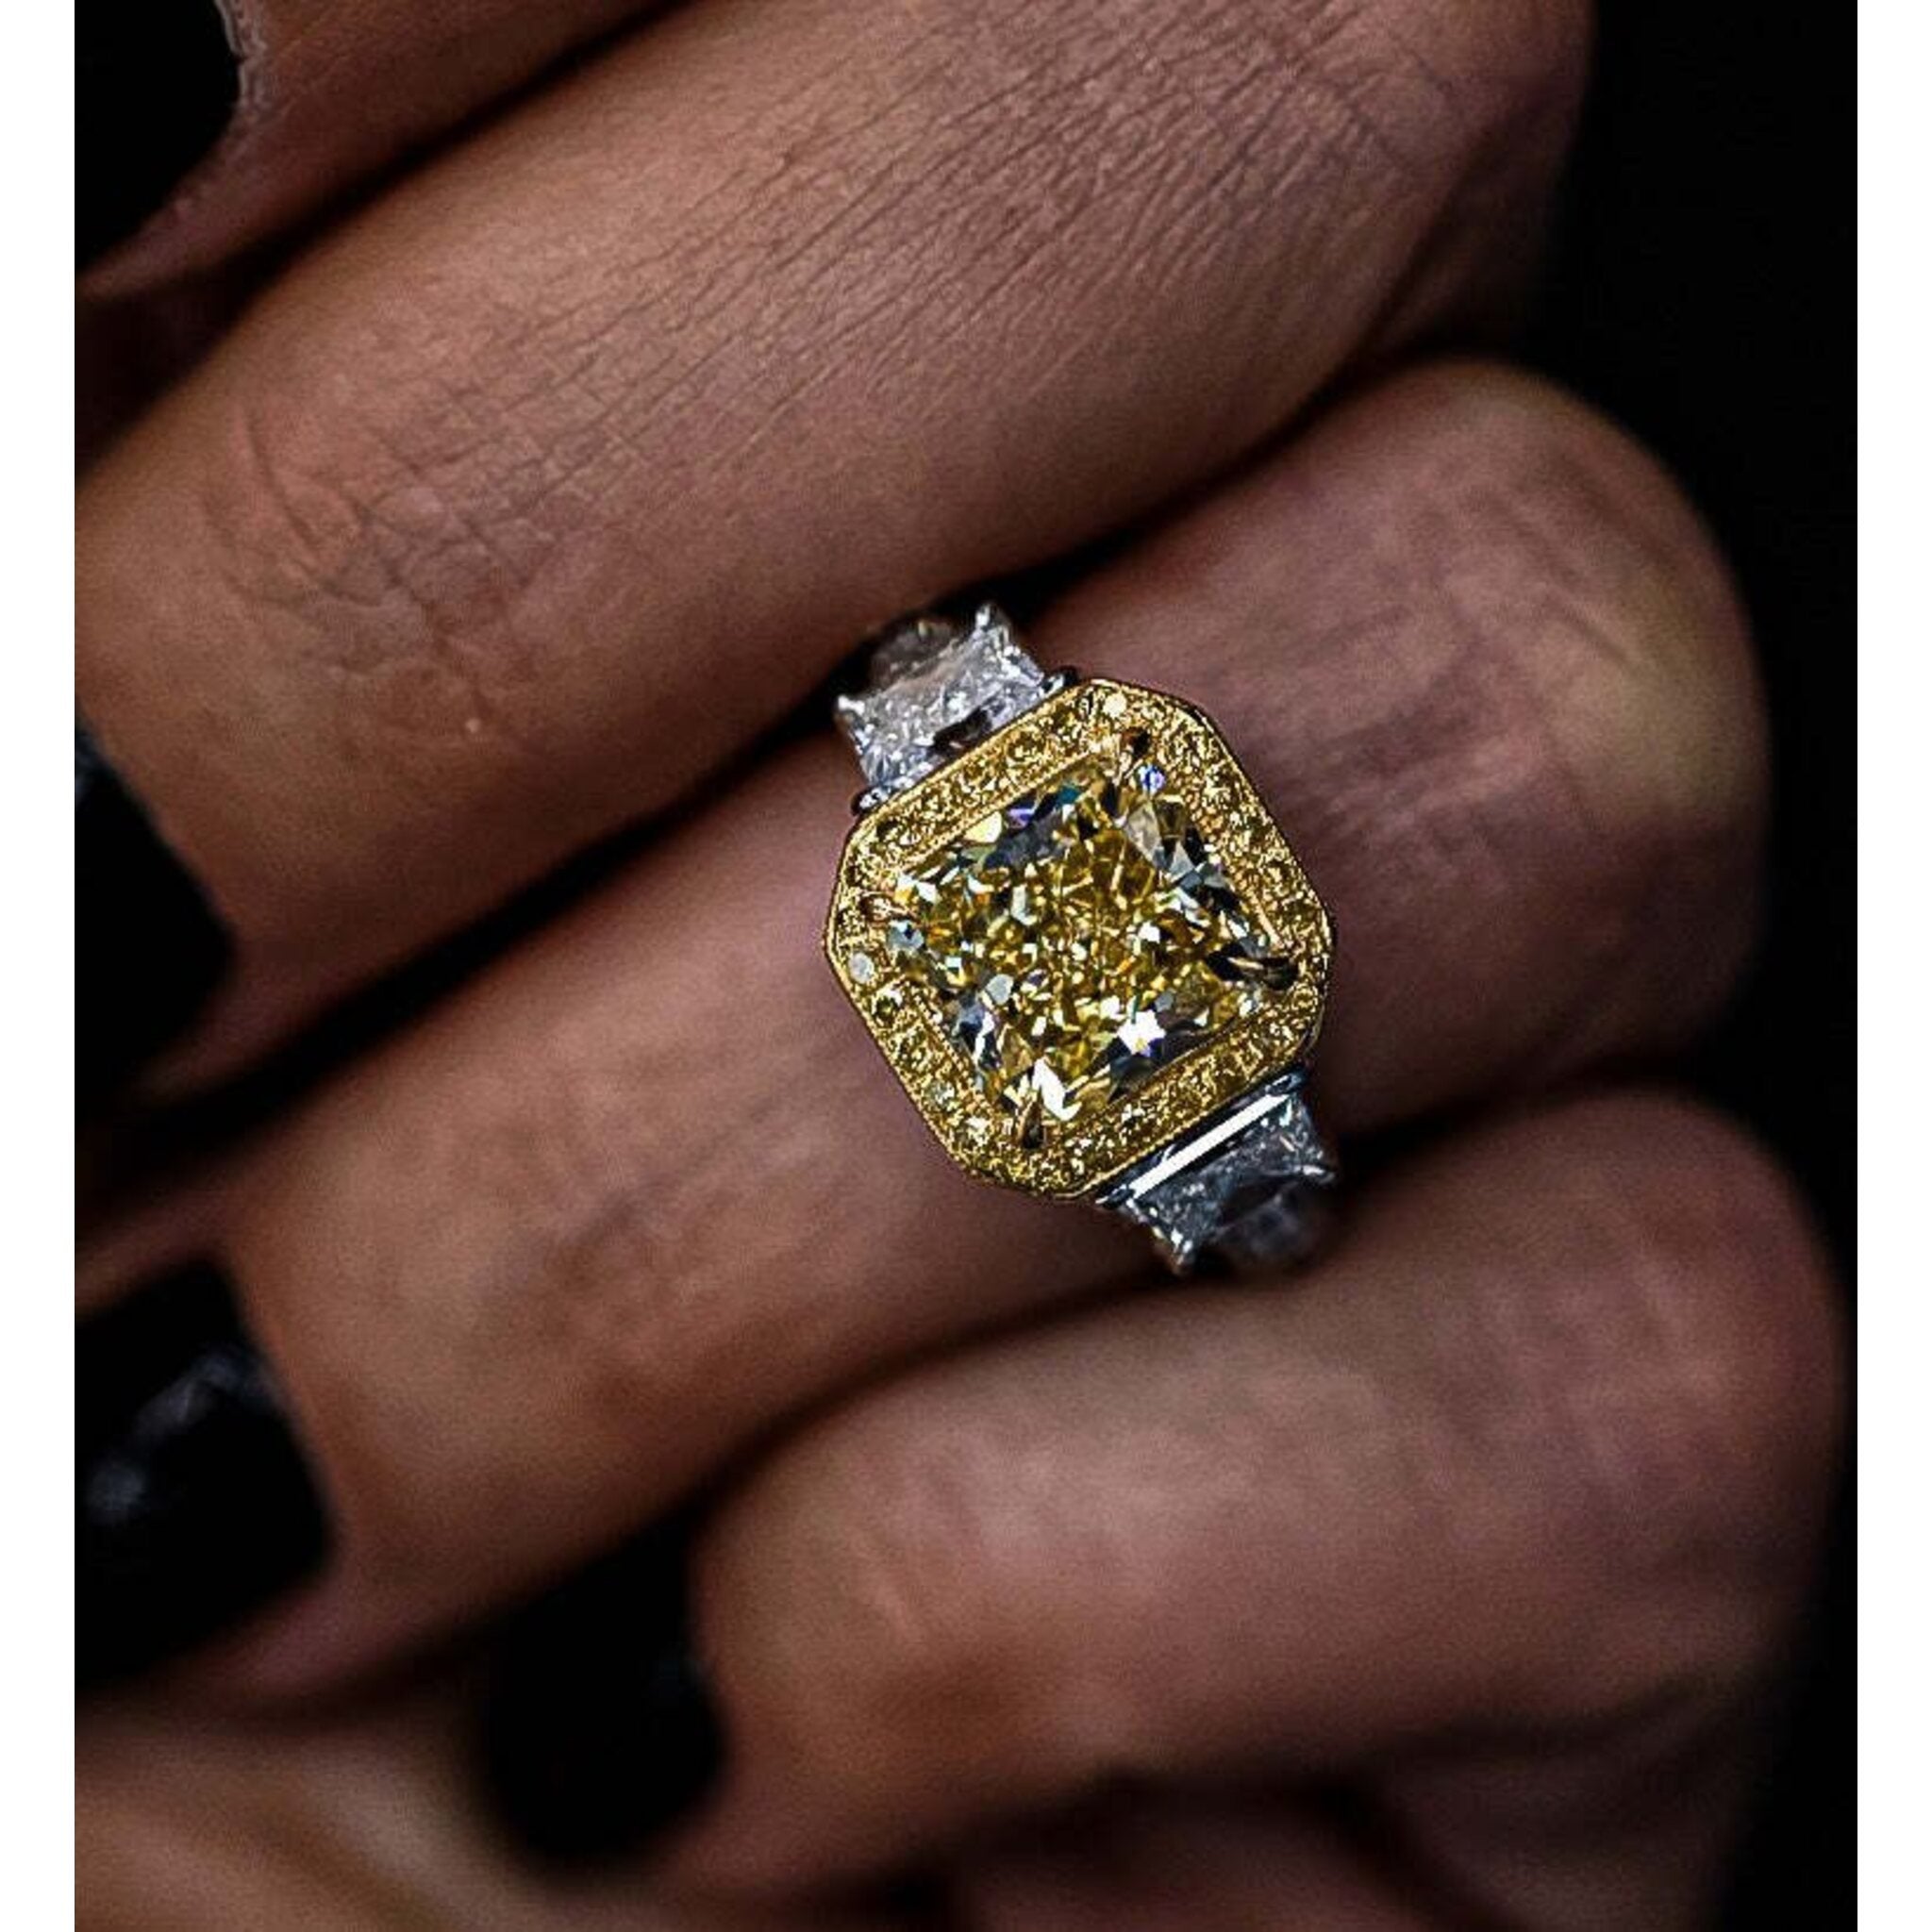 3ct Three Stone Diamond Engagement Ring 14K White Gold